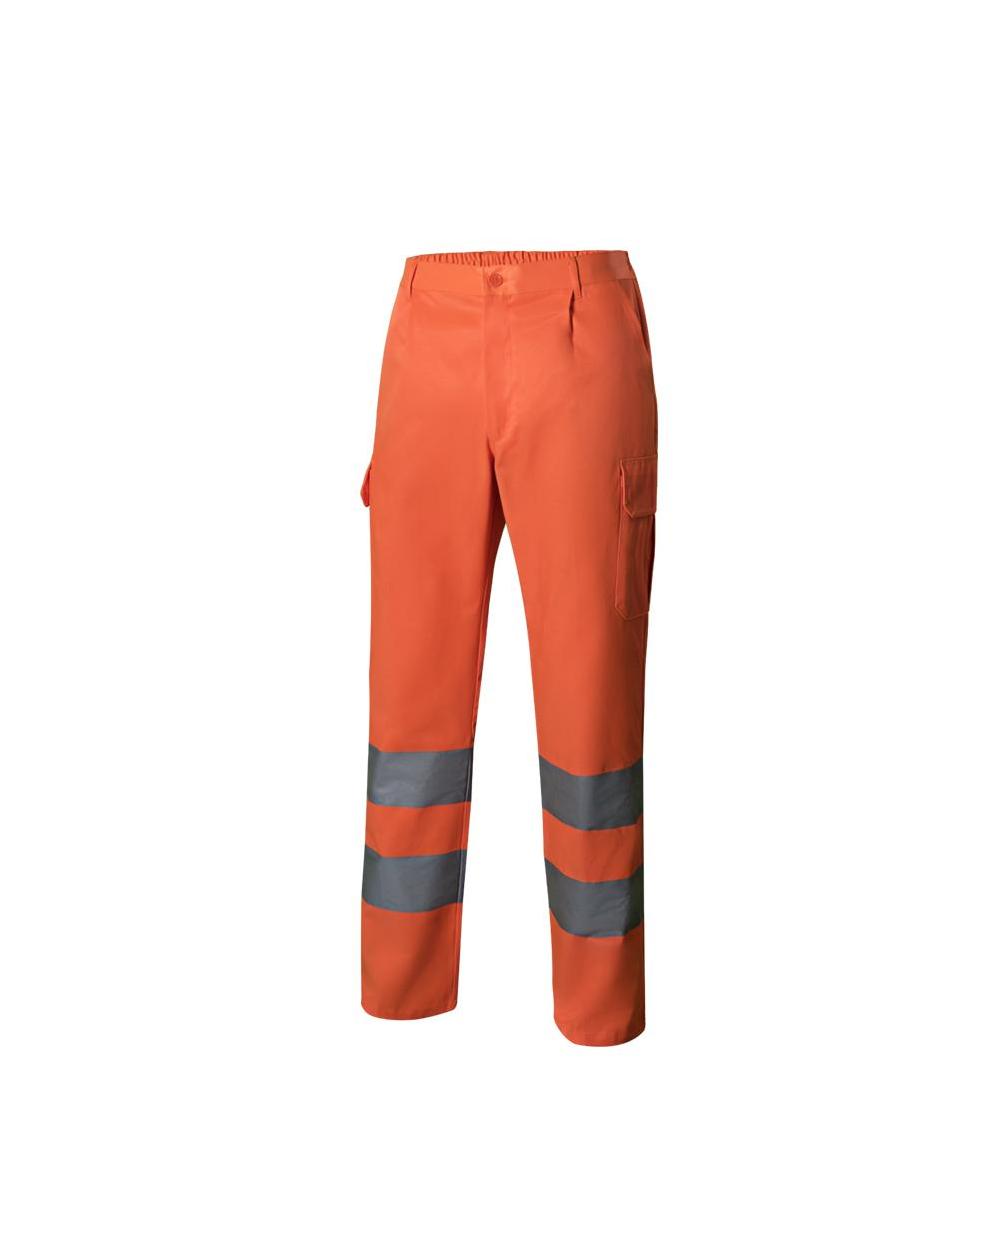 Comprar Pantalón multibolsillos alta visibilidad serie 303006 online barato Naranja Fluor